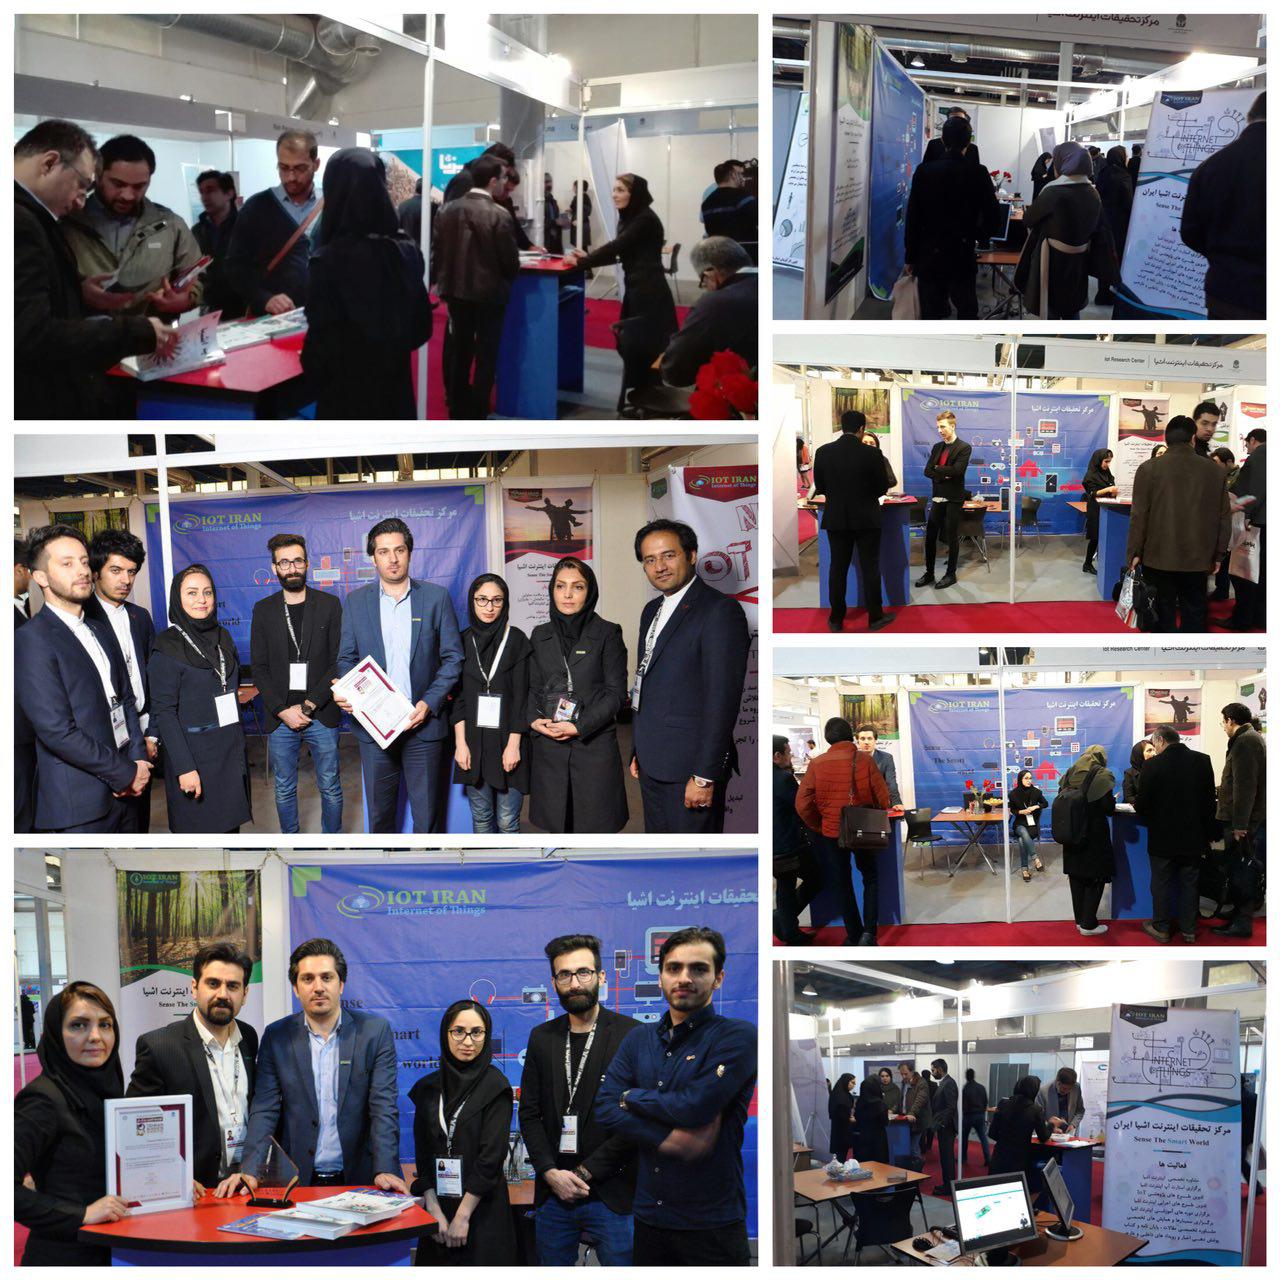 حضور مرکز تحقیقات اینترنت اشیا در اولین نمایشگاه توسعه کسب و کار تهران